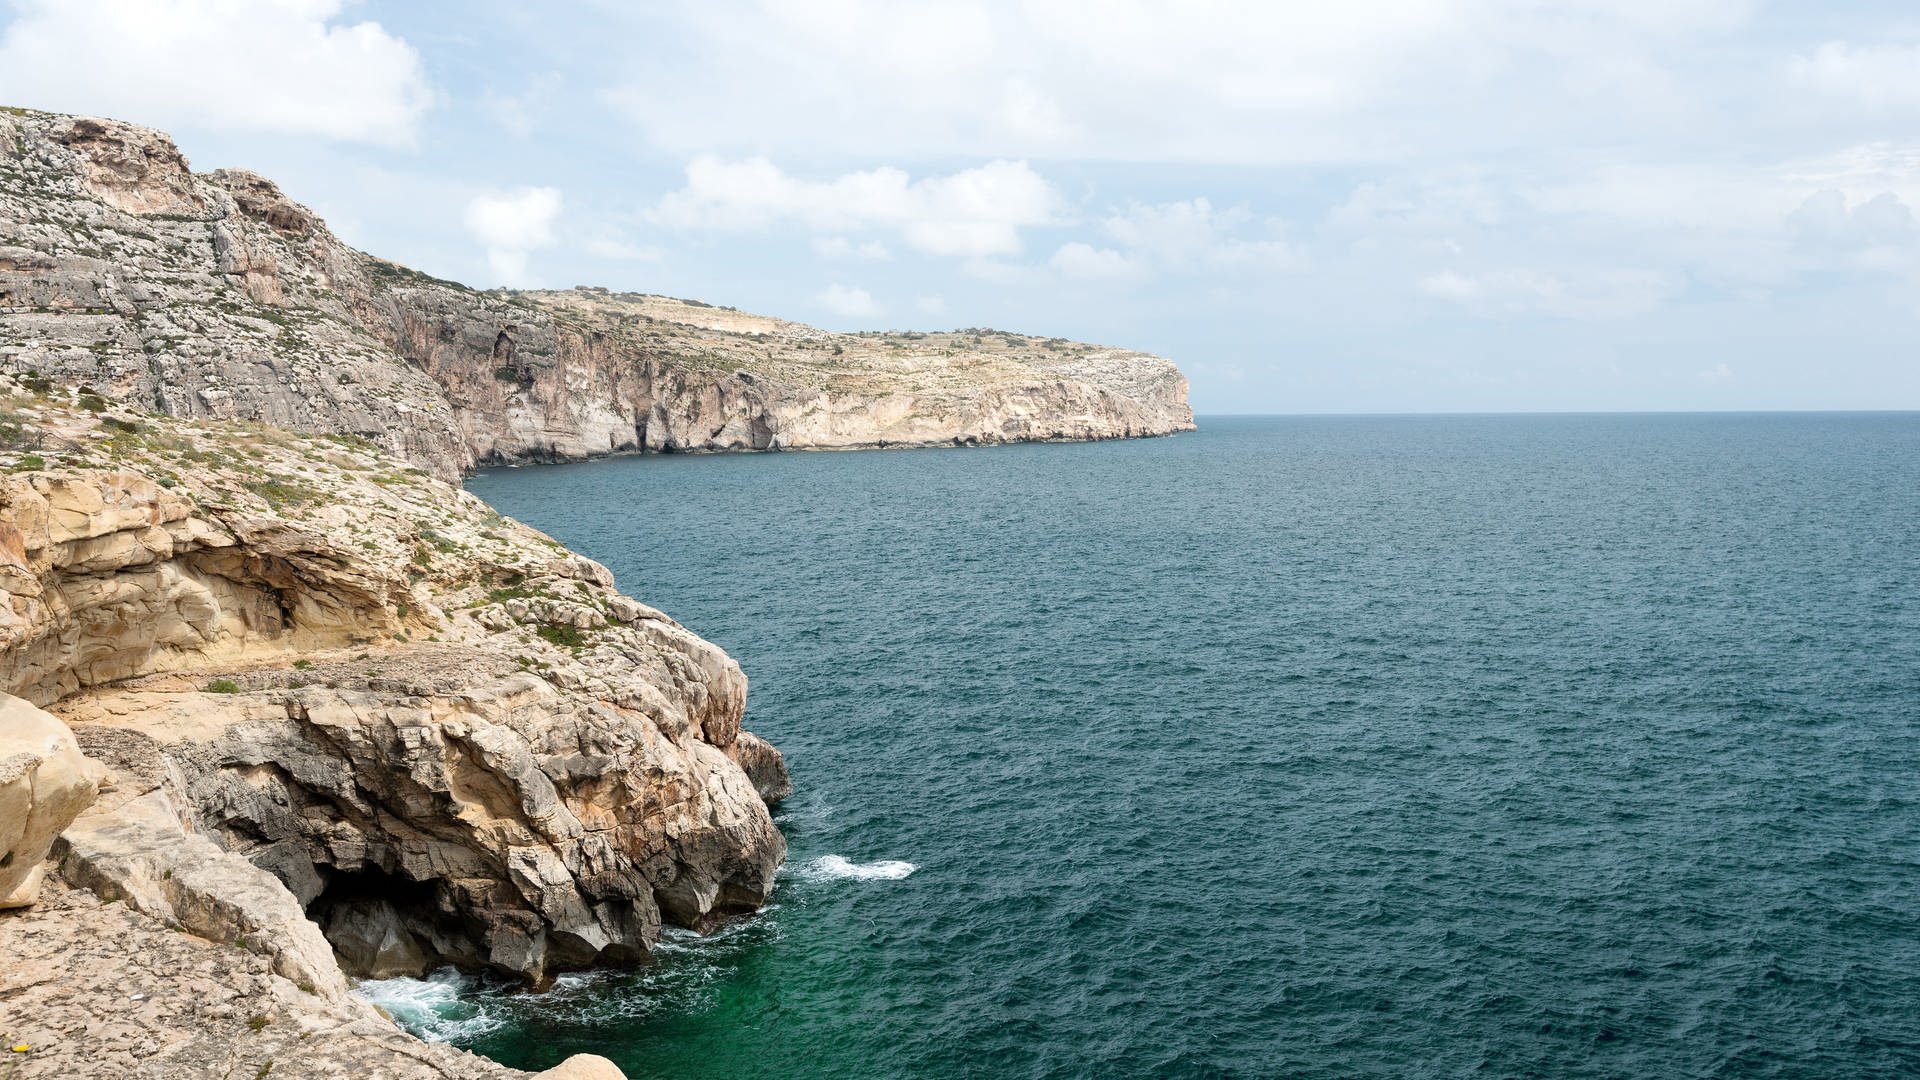 Die rauen Klippen und steinige Küste Maltas